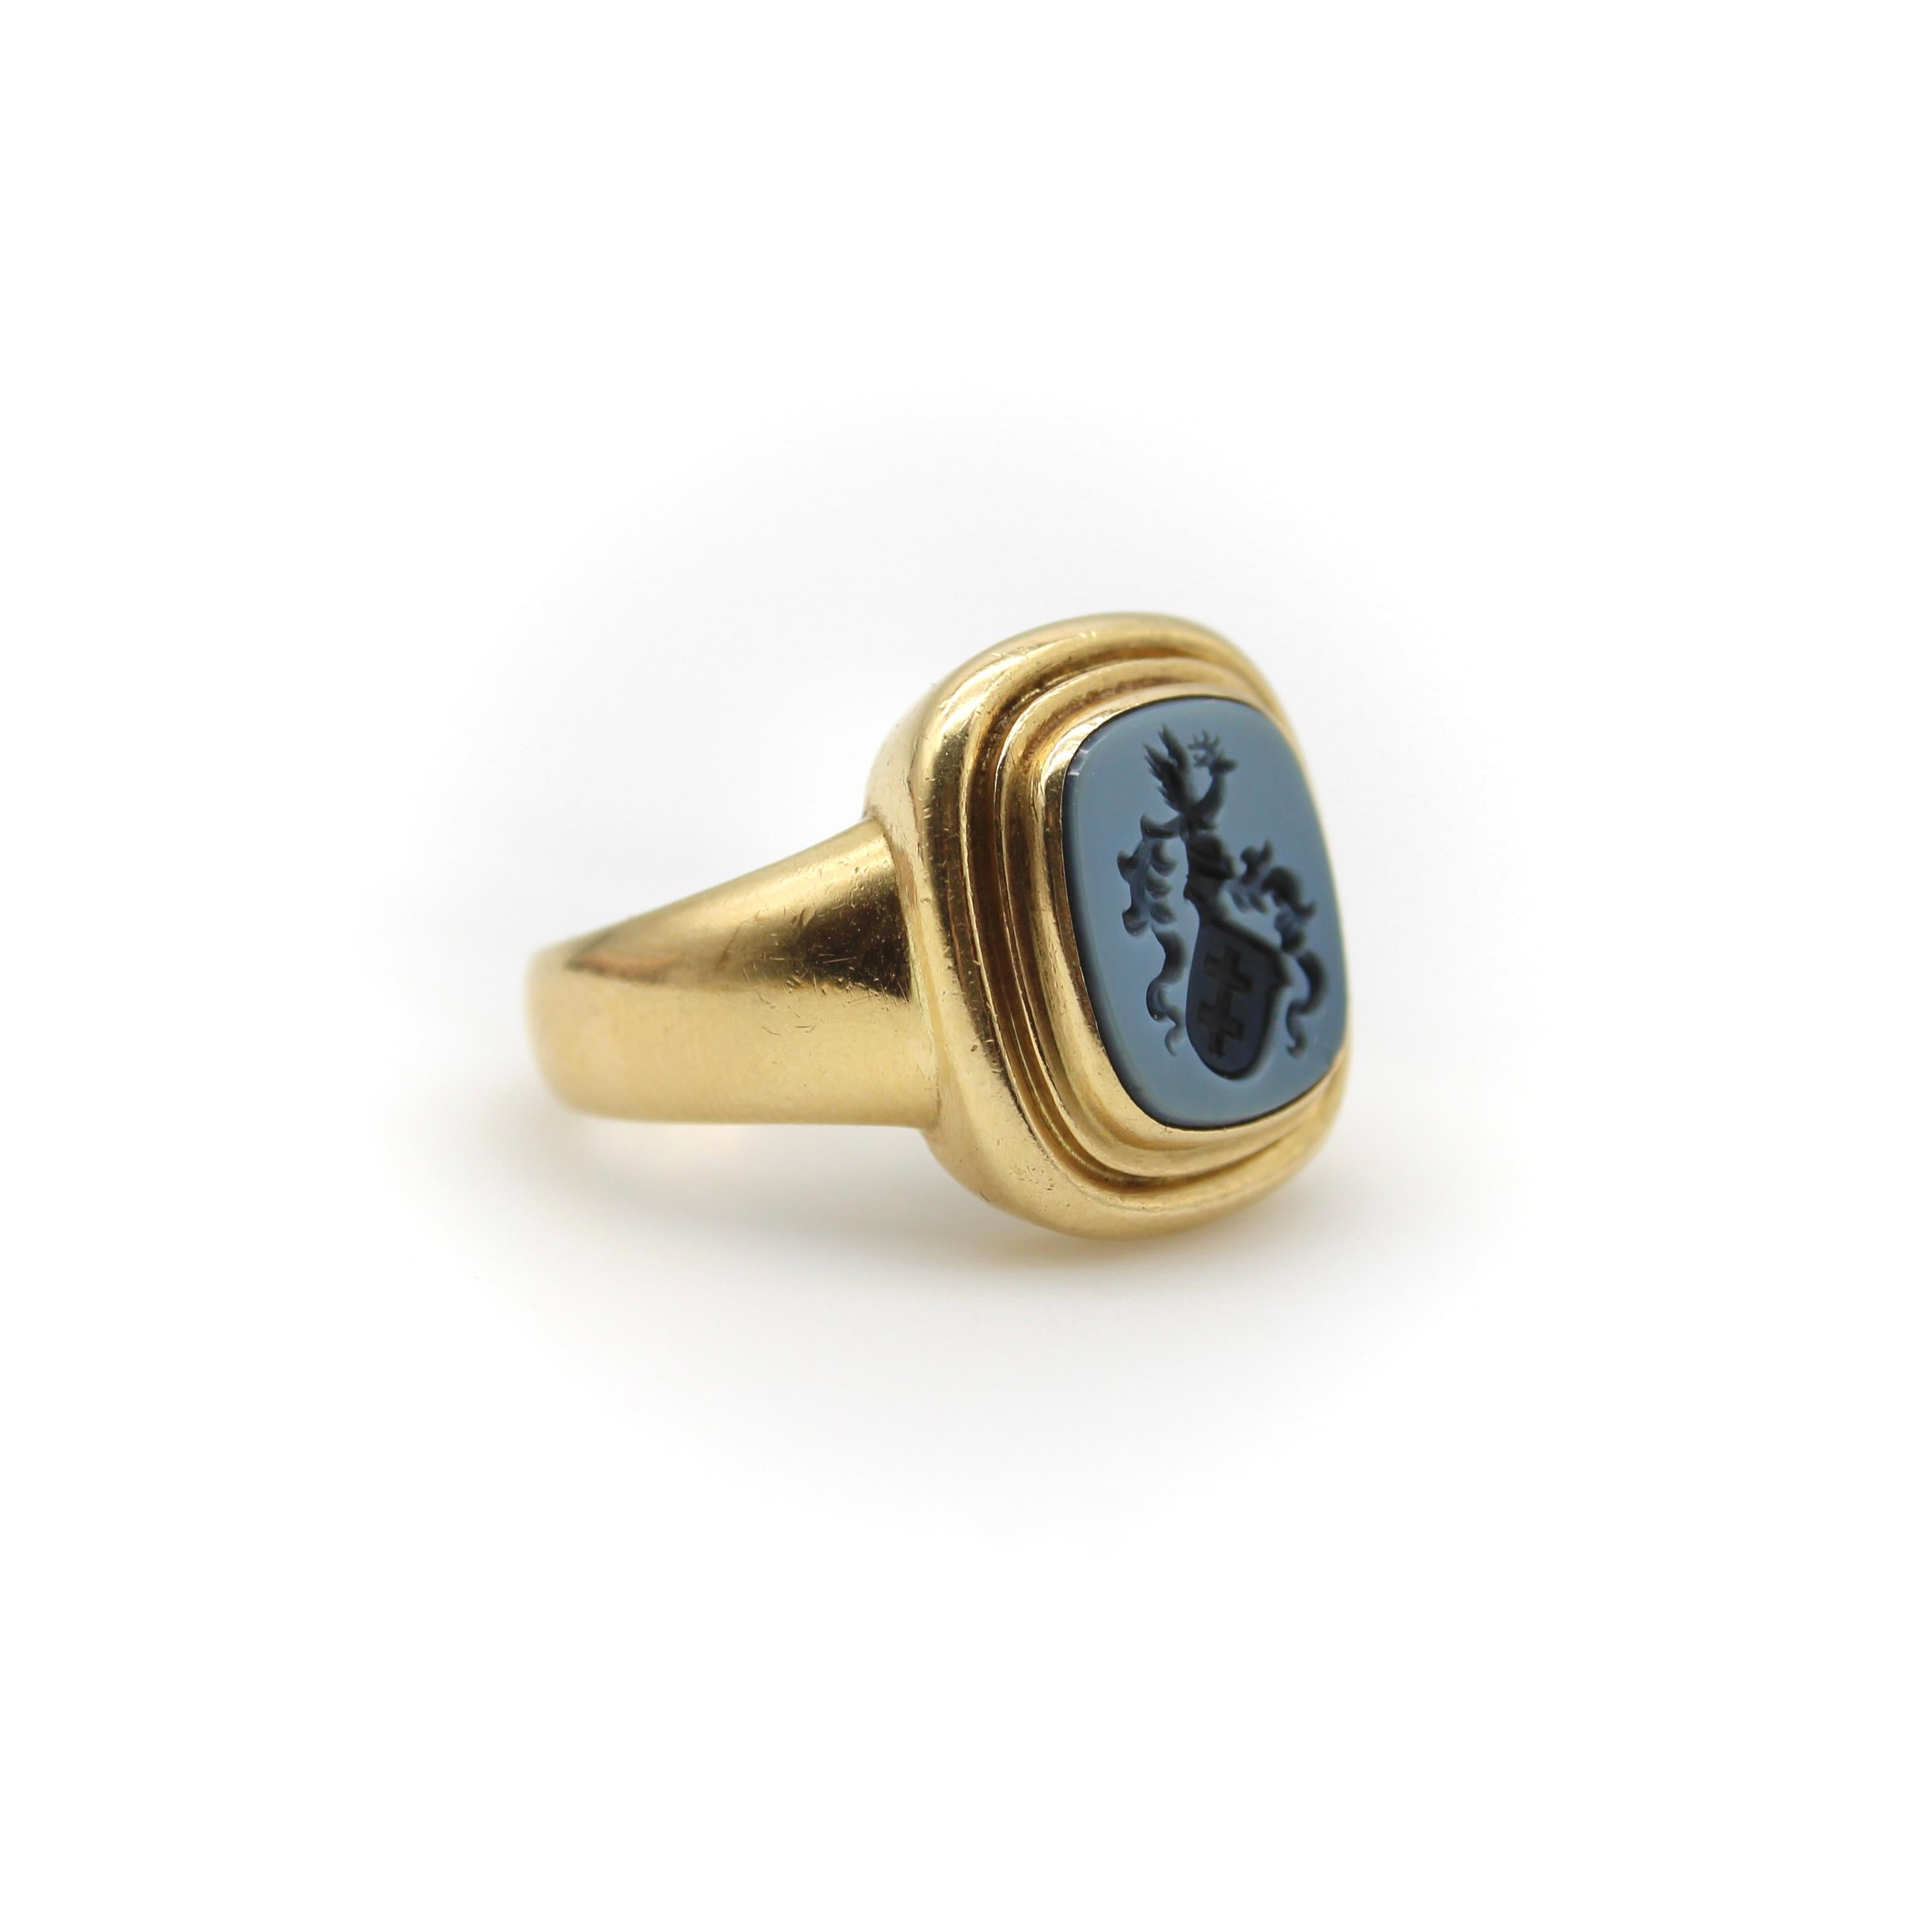 Vintage 14K Gold gebändert Achat geschnitzt Intaglio Signet Ring  1